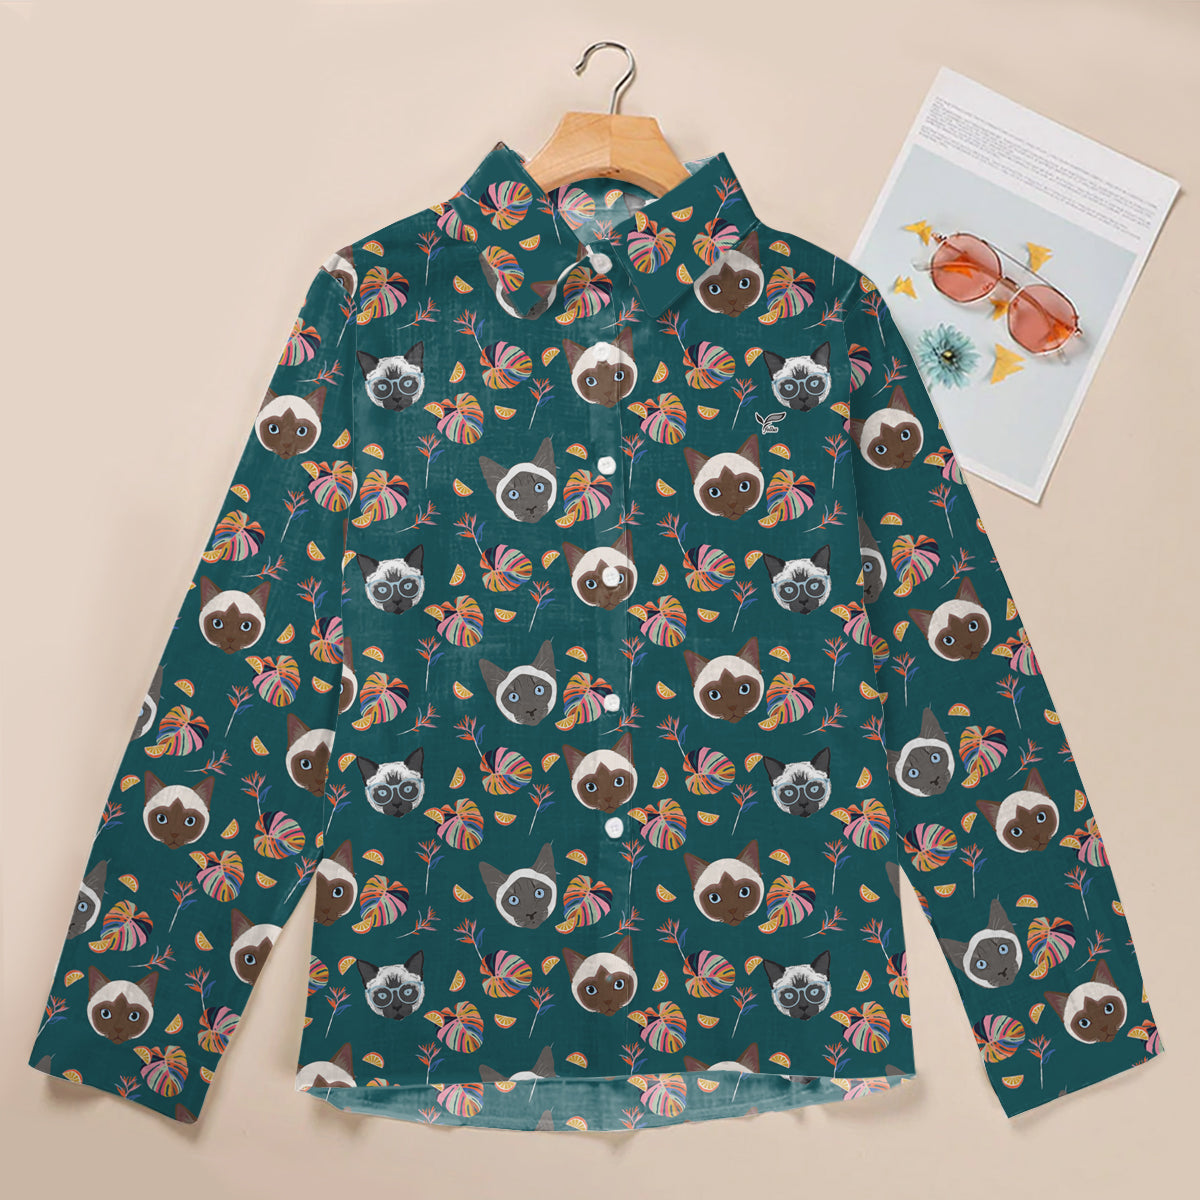 Summer Time - Siamese Cat Women Shirt